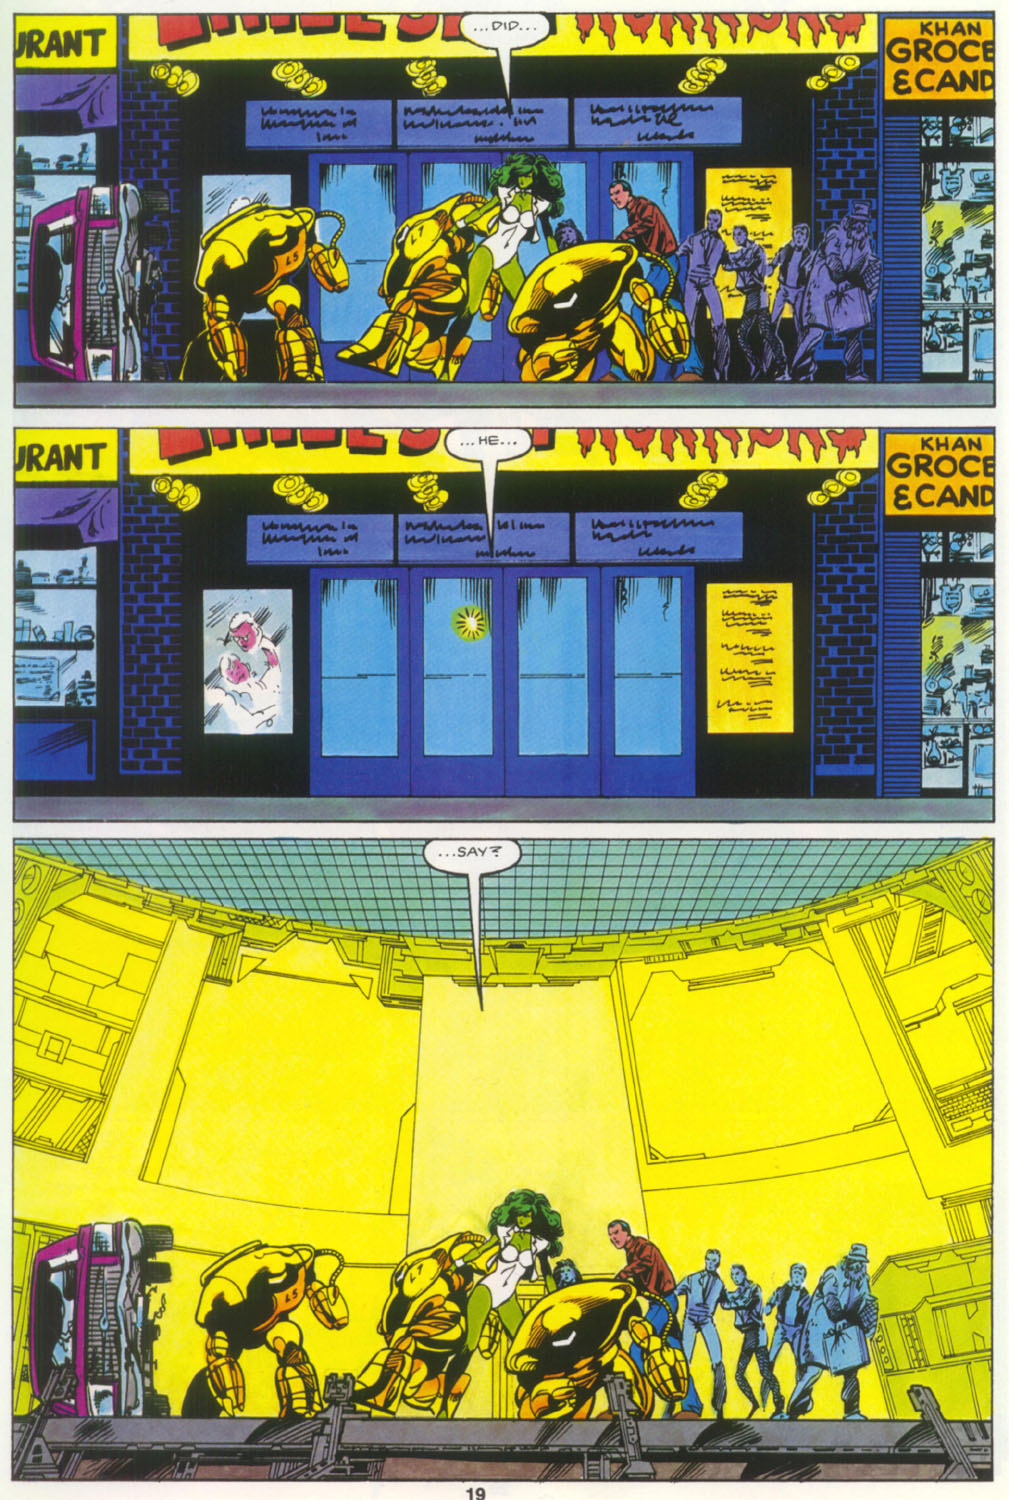 Read online Marvel Graphic Novel comic -  Issue #18 - The Sensational She-Hulk - 20